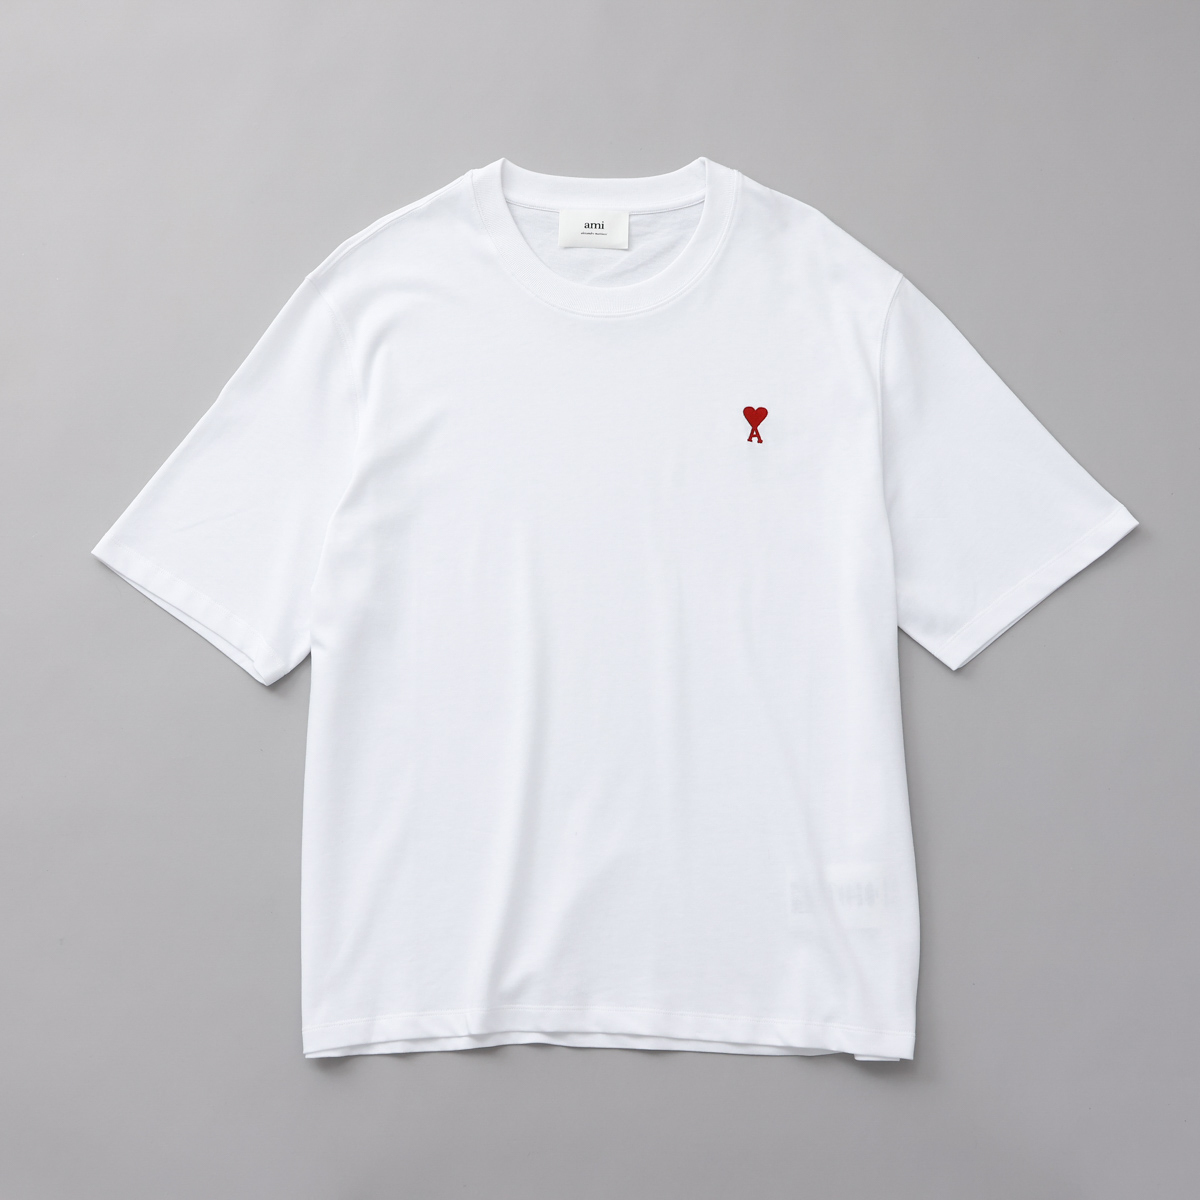 アミ パリス AMI PARIS Tシャツ XS-Lサイズ BFUTS005.726 001 アミ